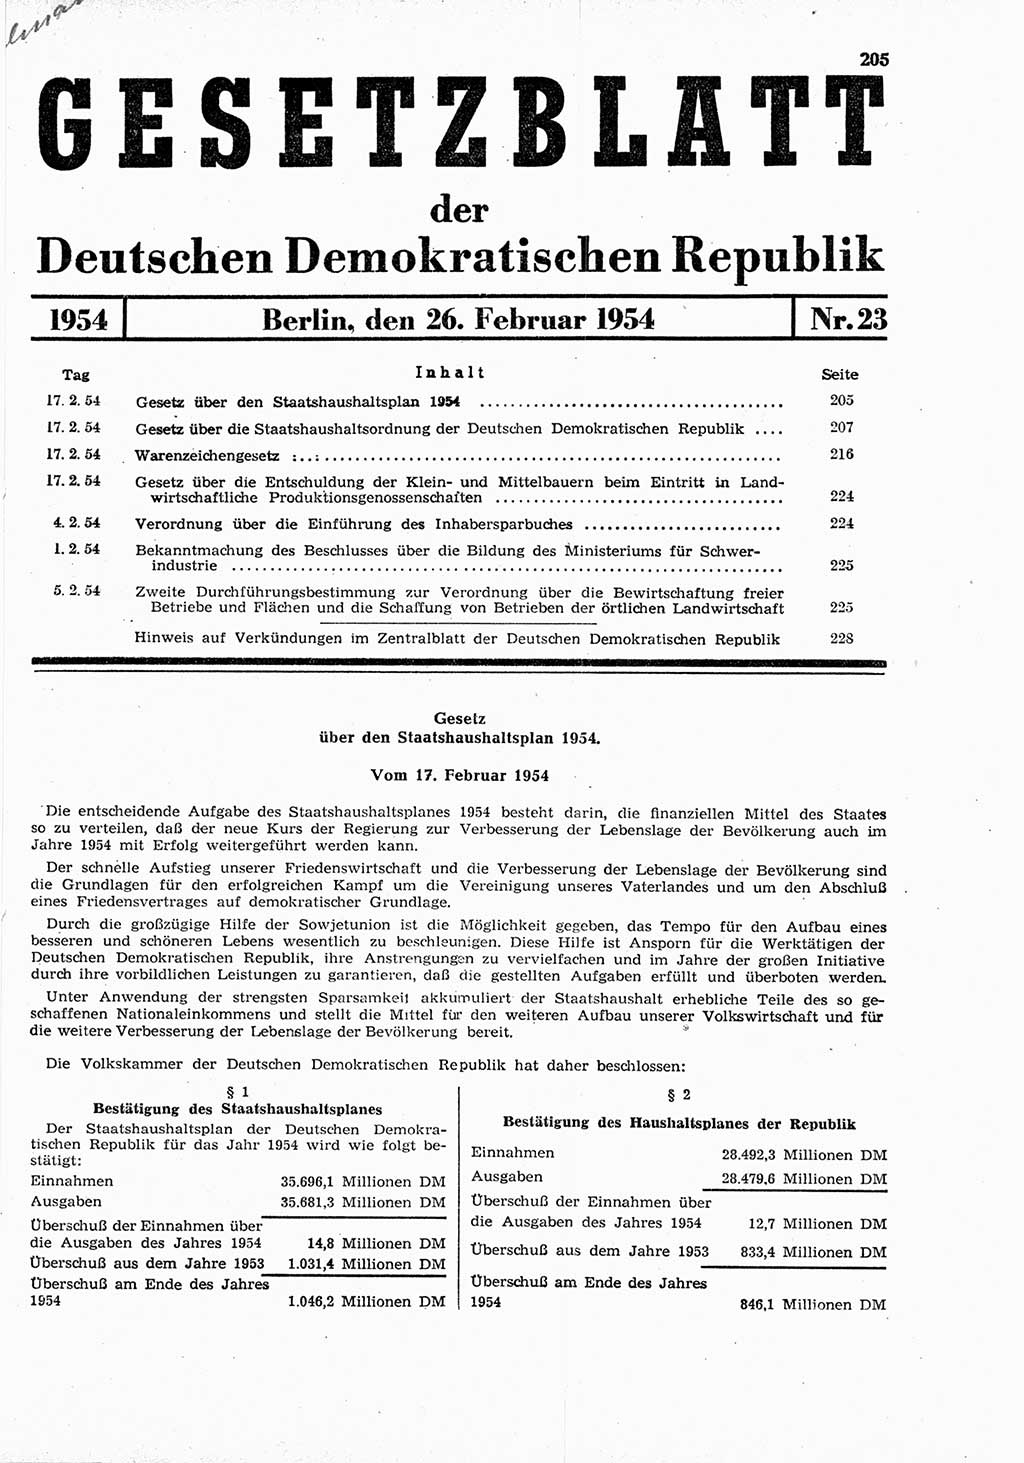 Gesetzblatt (GBl.) der Deutschen Demokratischen Republik (DDR) 1954, Seite 205 (GBl. DDR 1954, S. 205)